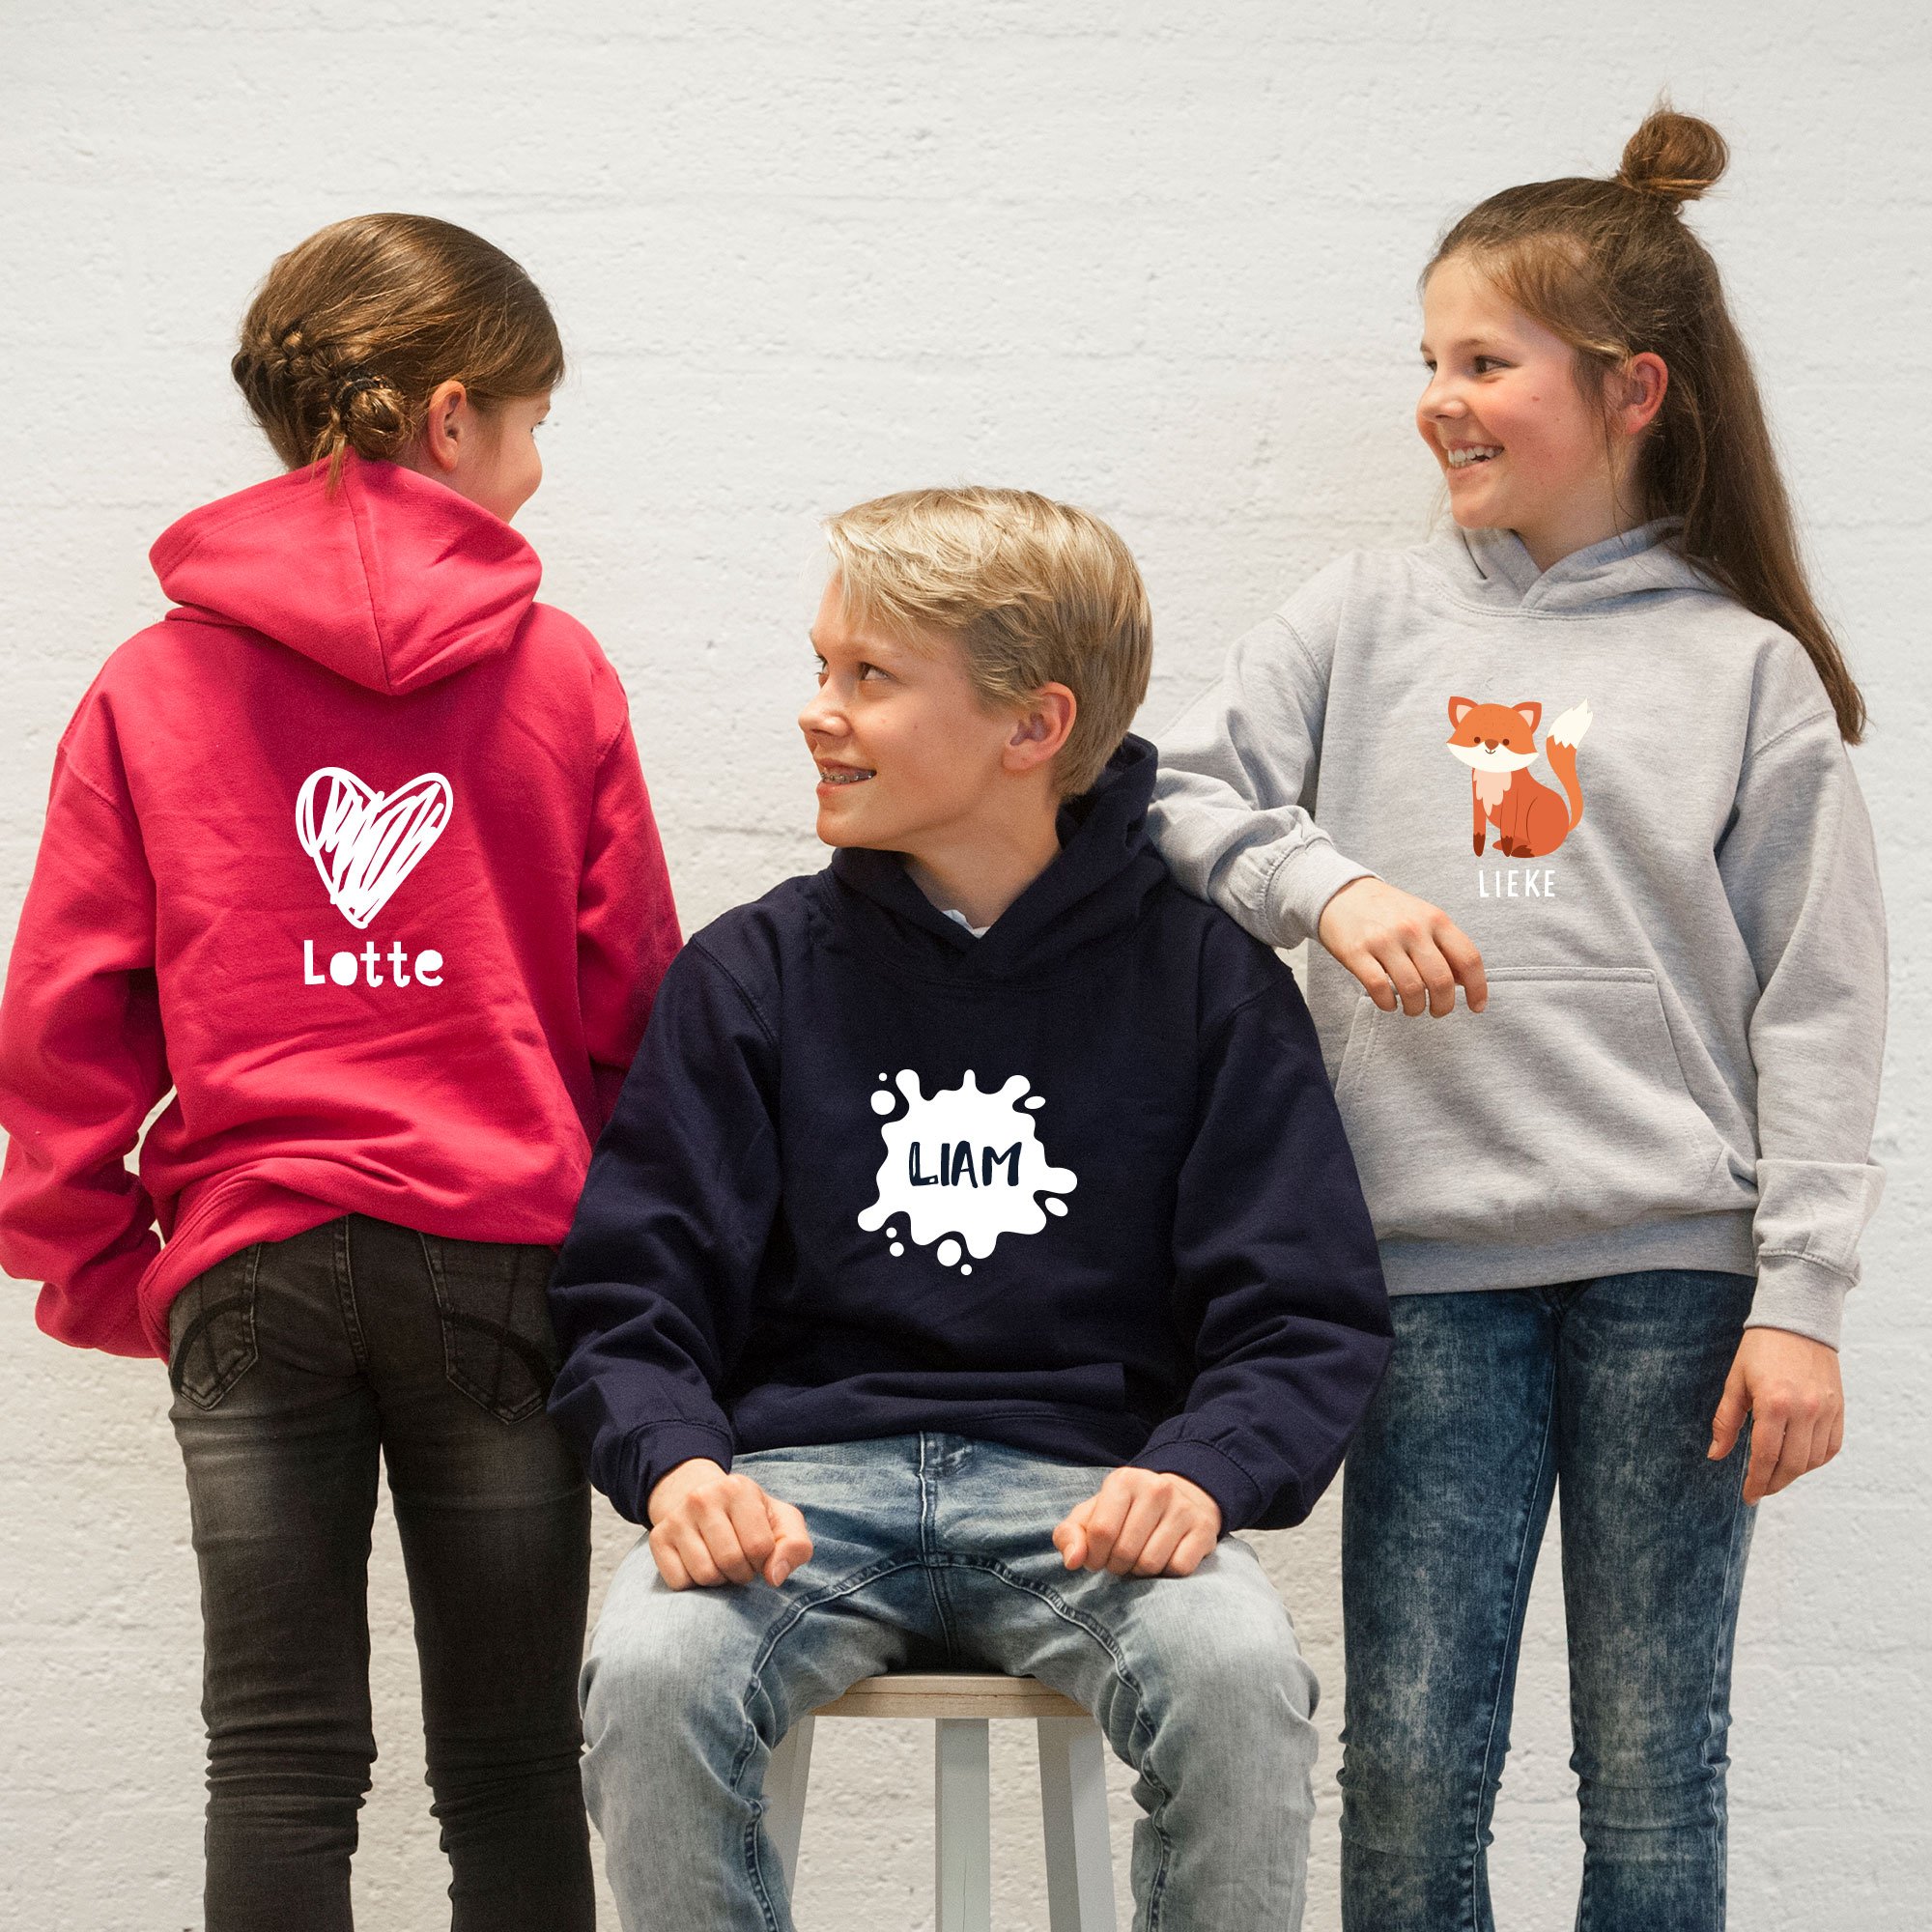 Meisjes en jongen met capuchonsweater met naam en print